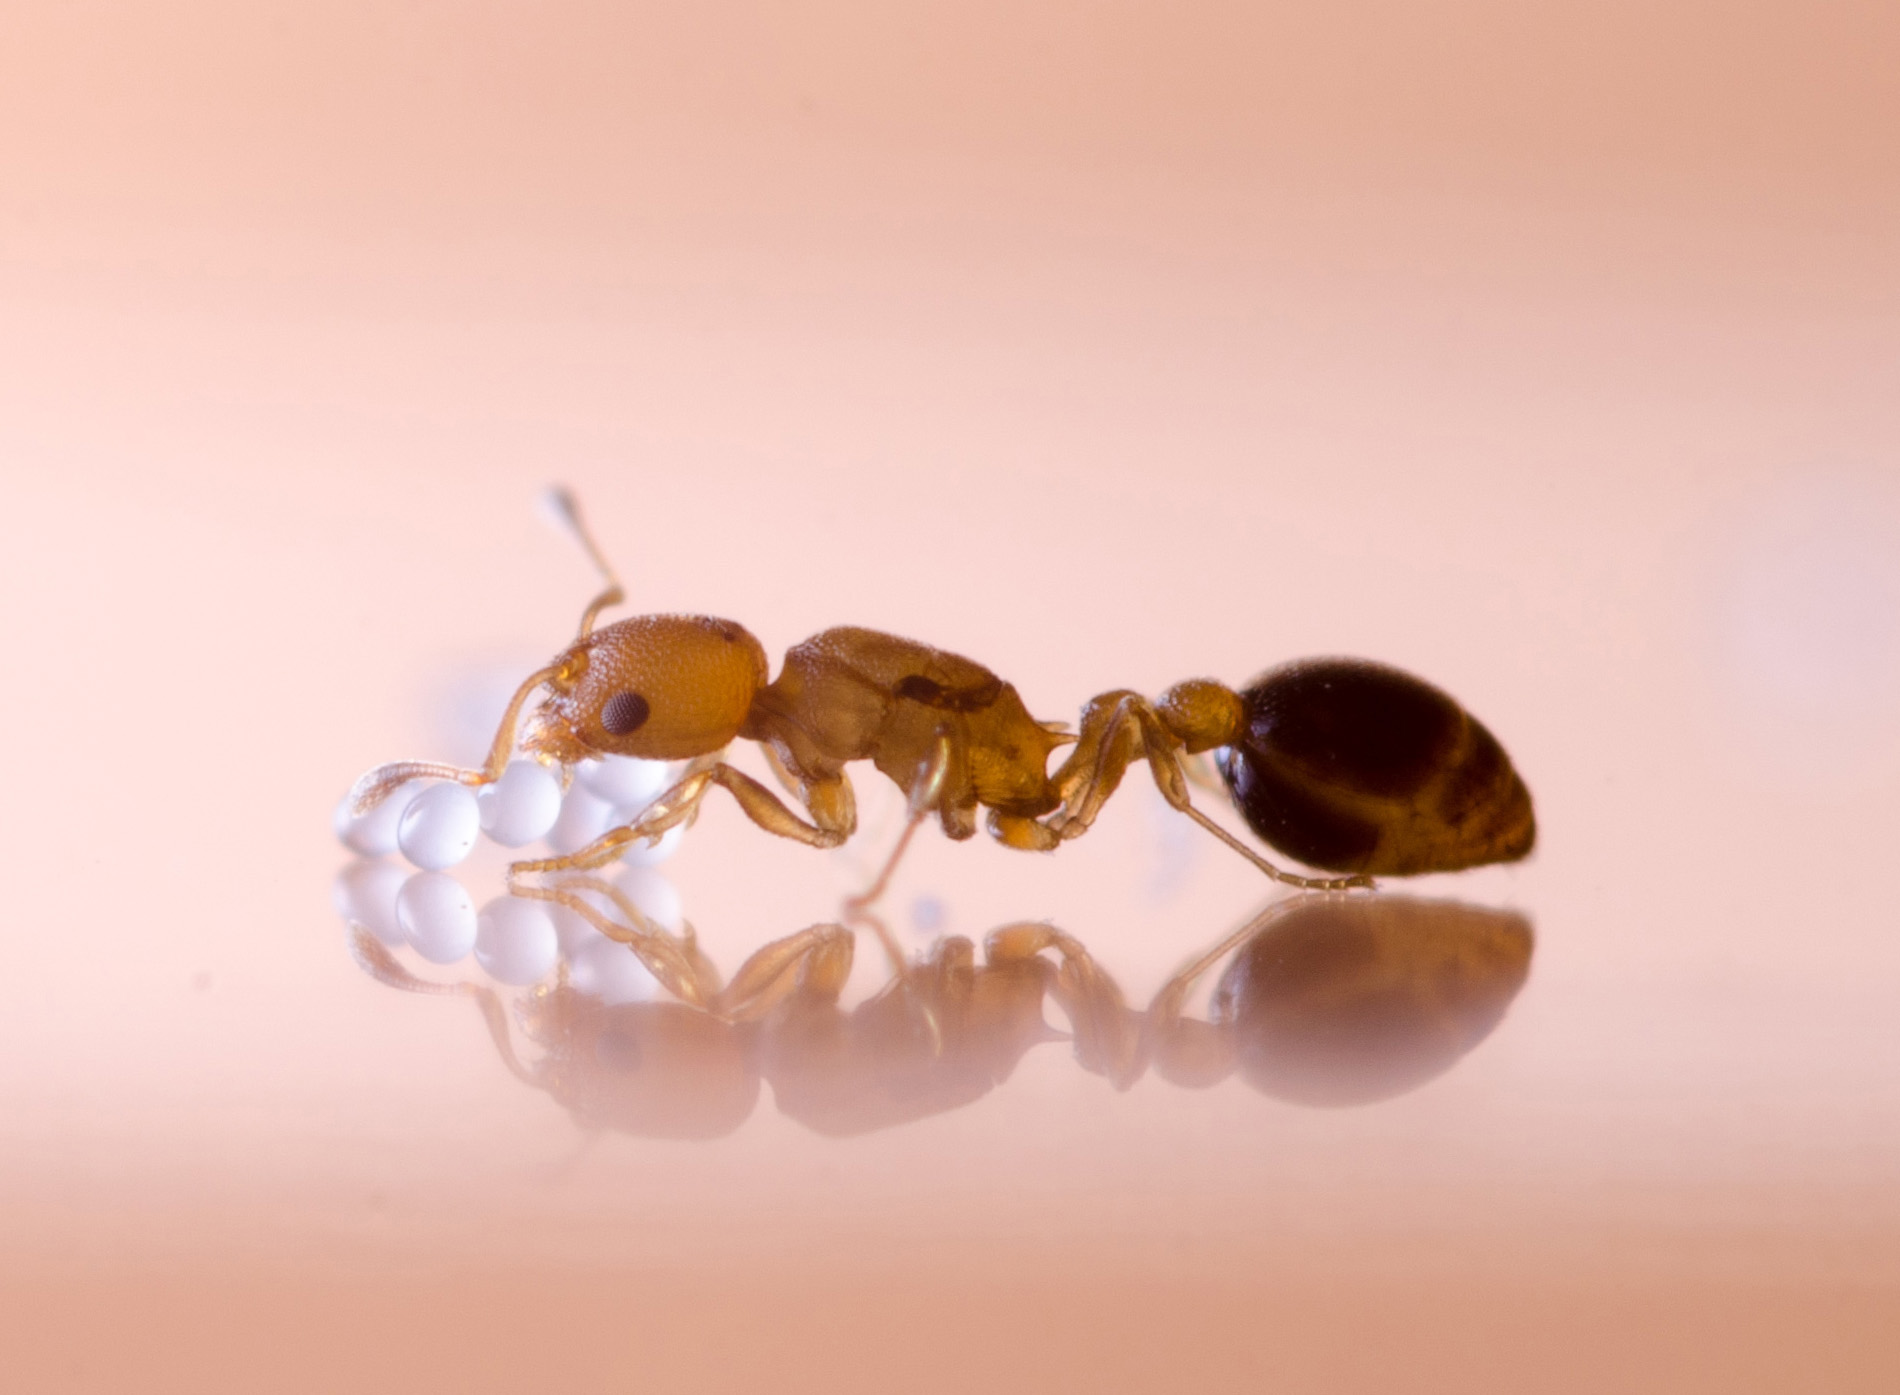 Ameisen-Königin bei der Pflege ihrer Eier. Foto: Matti Leponiemi 